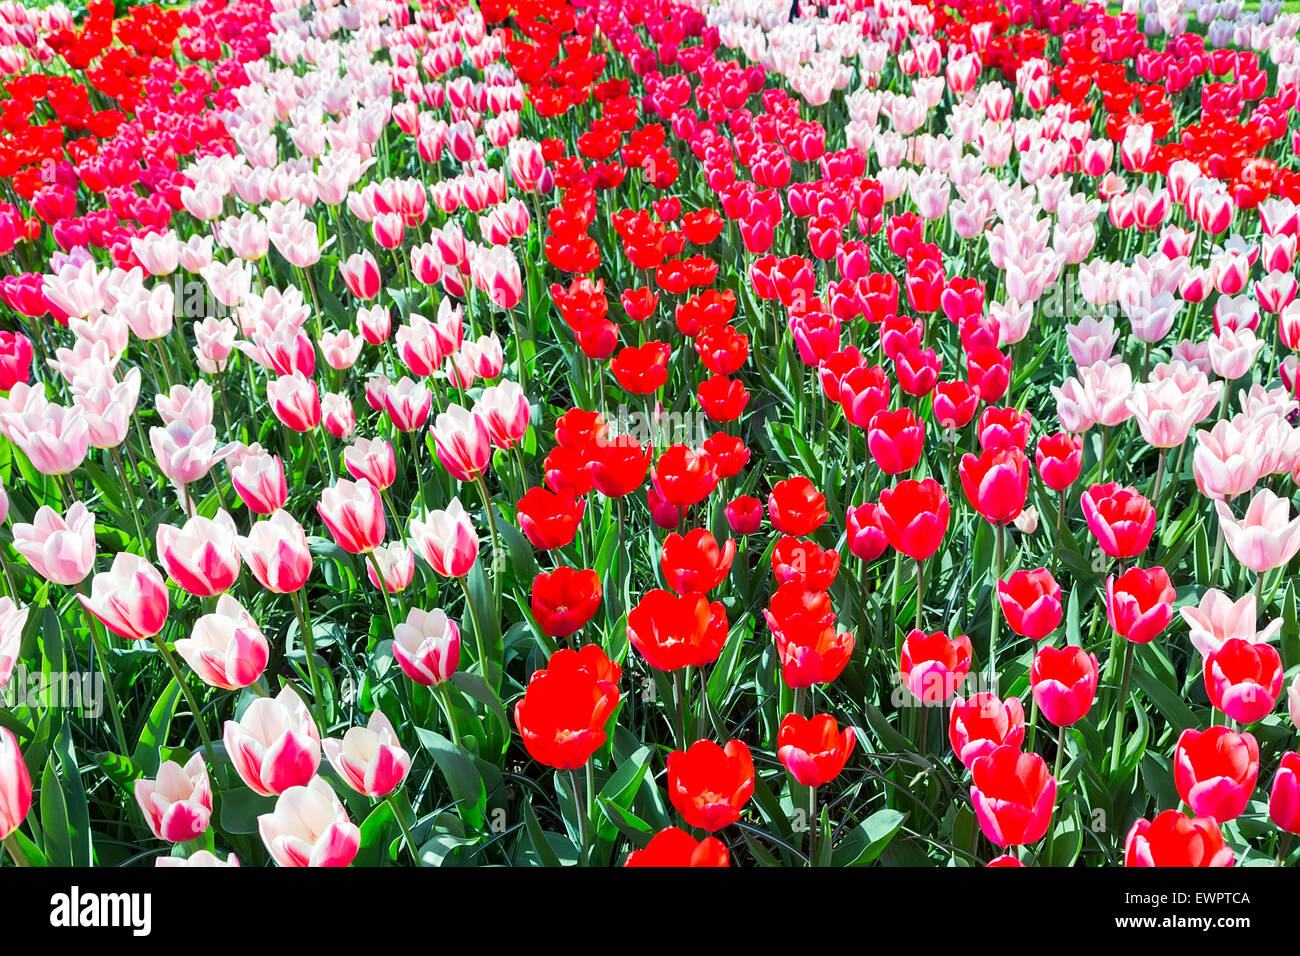 Tulpenfeld mit verschiedenen roten Tulpen in Reihen im Keukenhof Holland Stockfoto